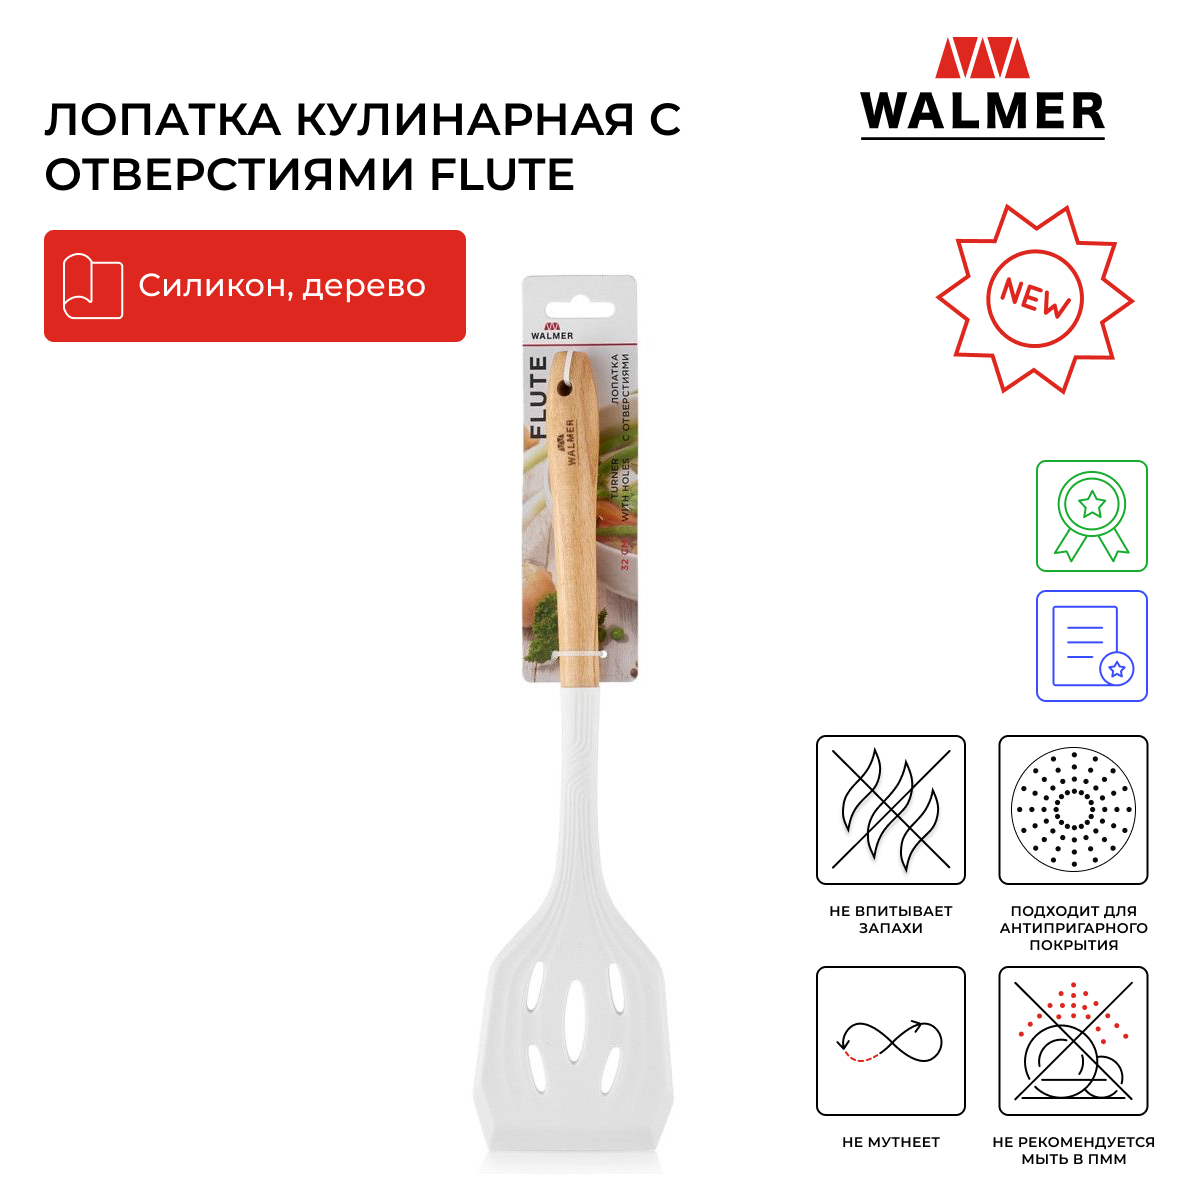 Лопатка кулинарная с отверстиями Walmer Flute 32 см цвет кремовый W30027099